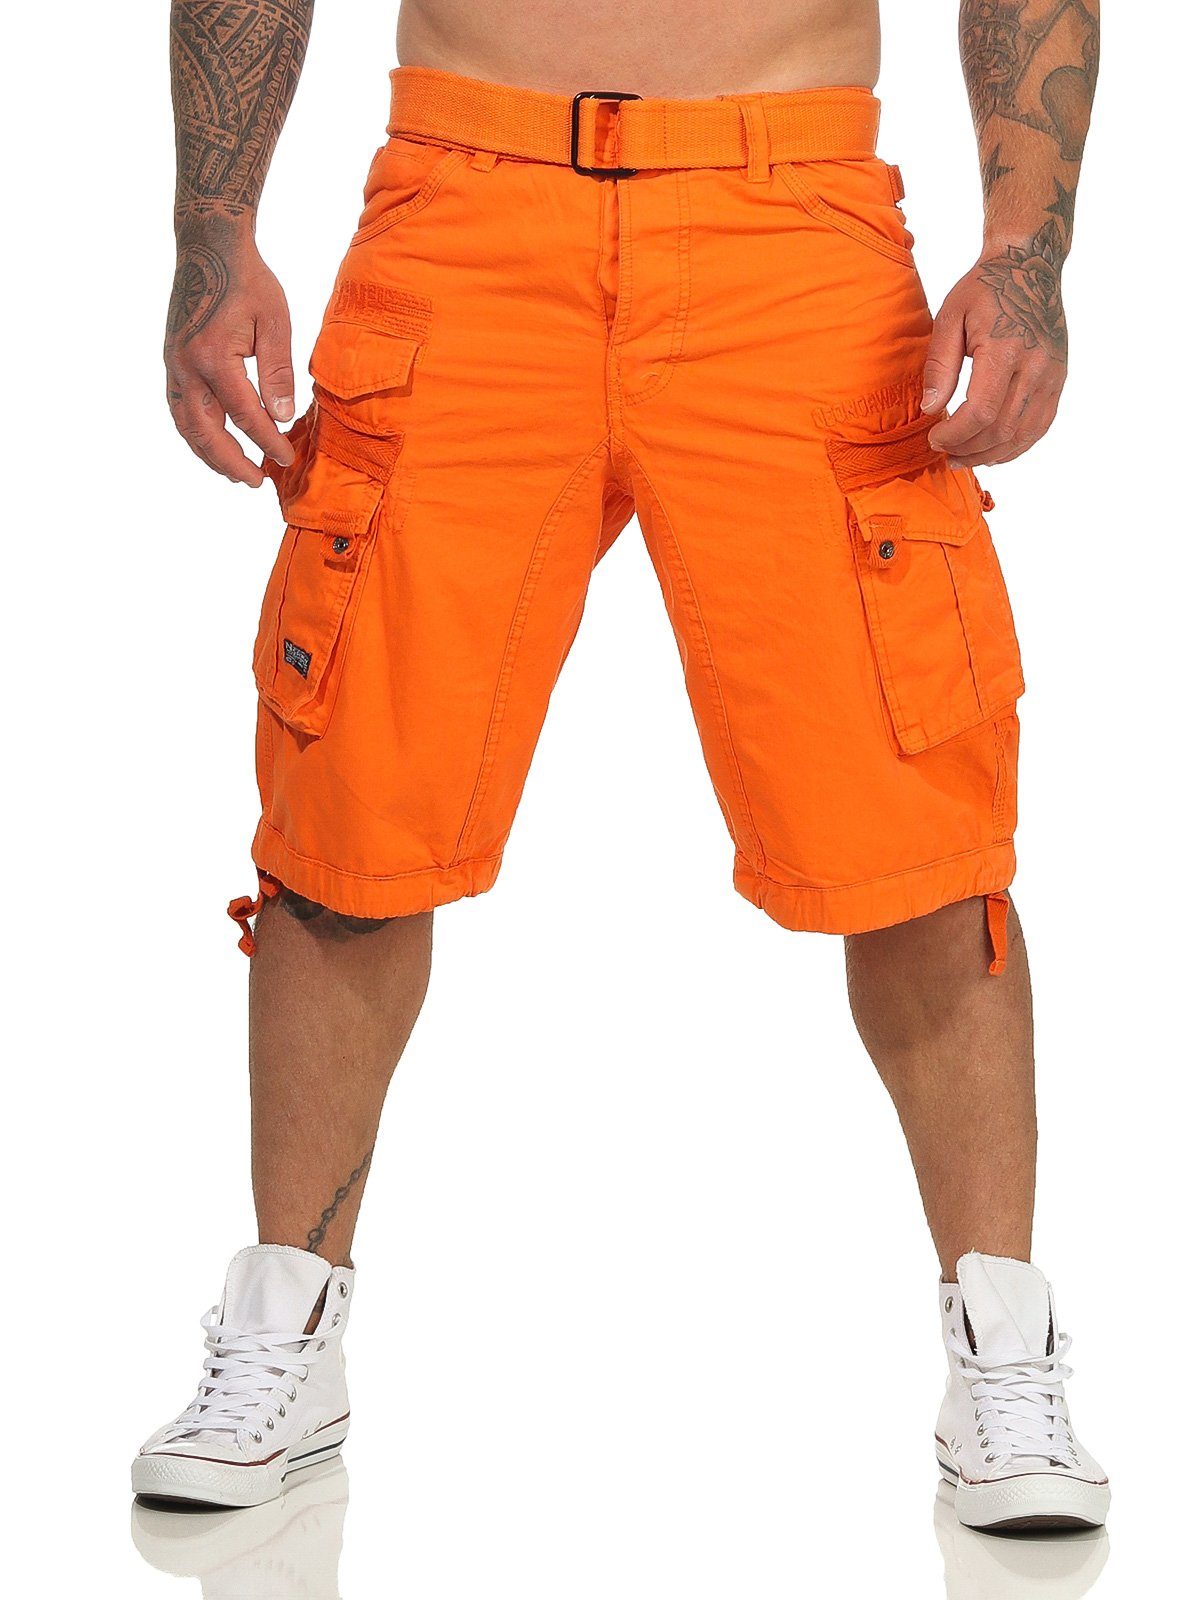 Geographical Norway Cargoshorts Herren Shorts PANORAMIQUE (mit abnehmbarem Gürtel) Shorts, kurze Hose, unifarben / camouflage orange